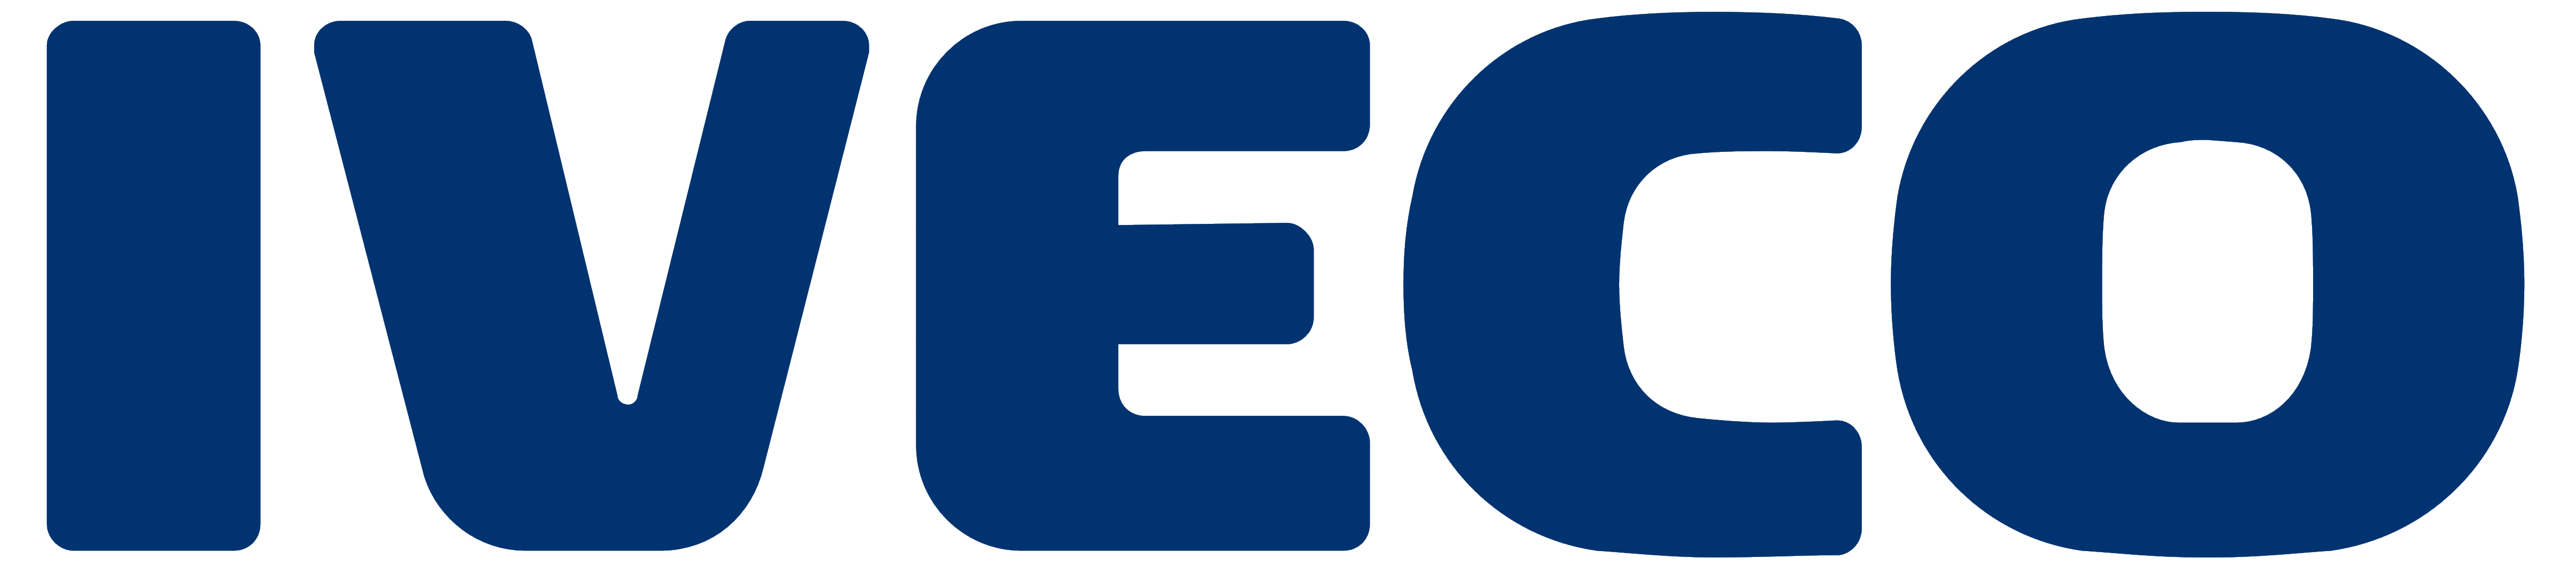 Iveco_logo_logotype